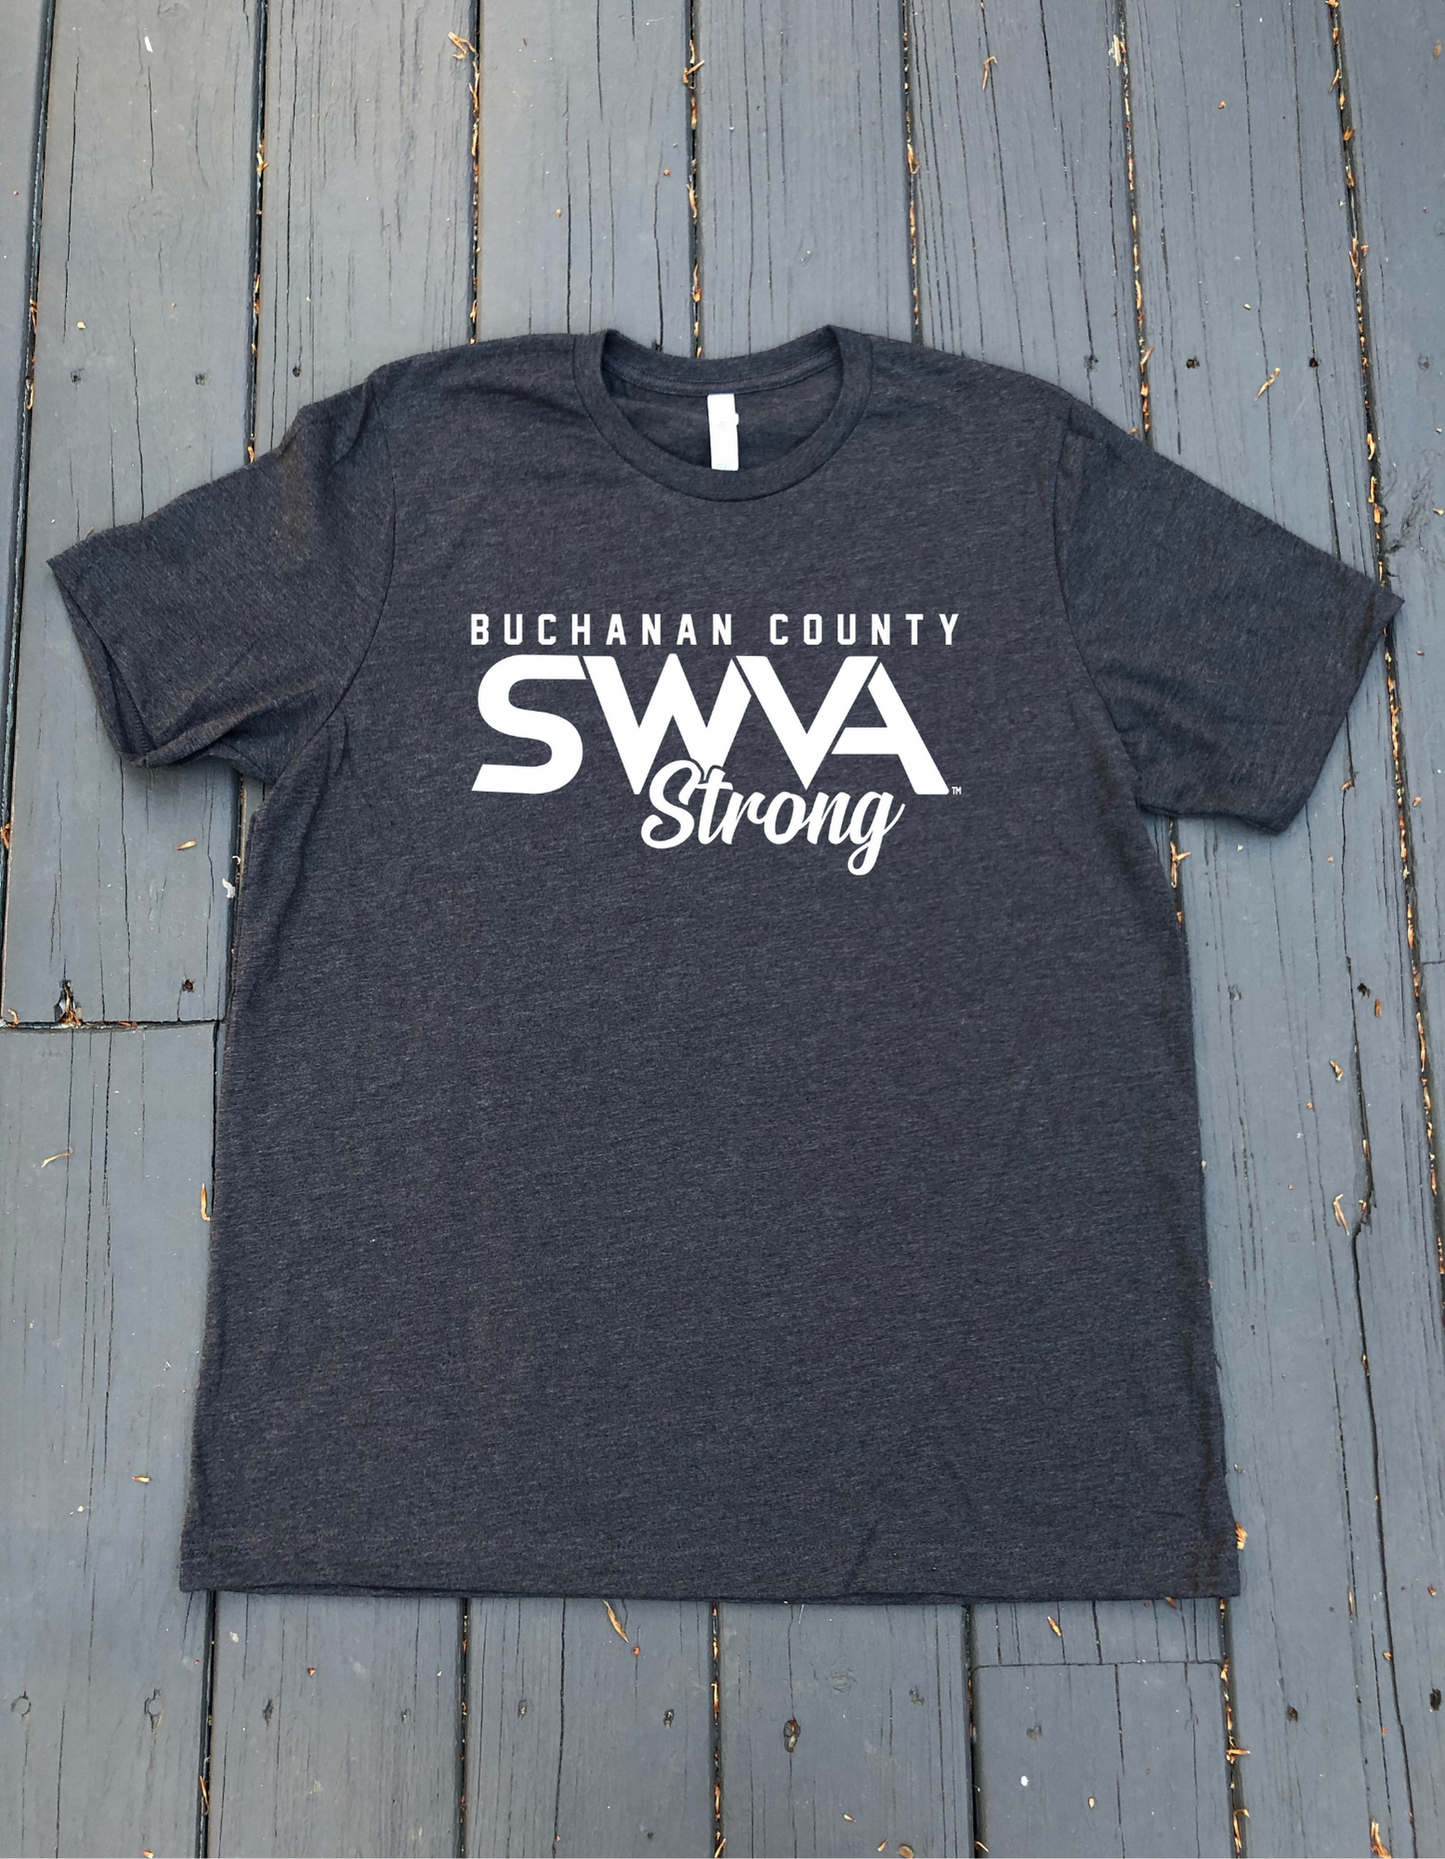 Buchanan County - SWVA Strong T-Shirt